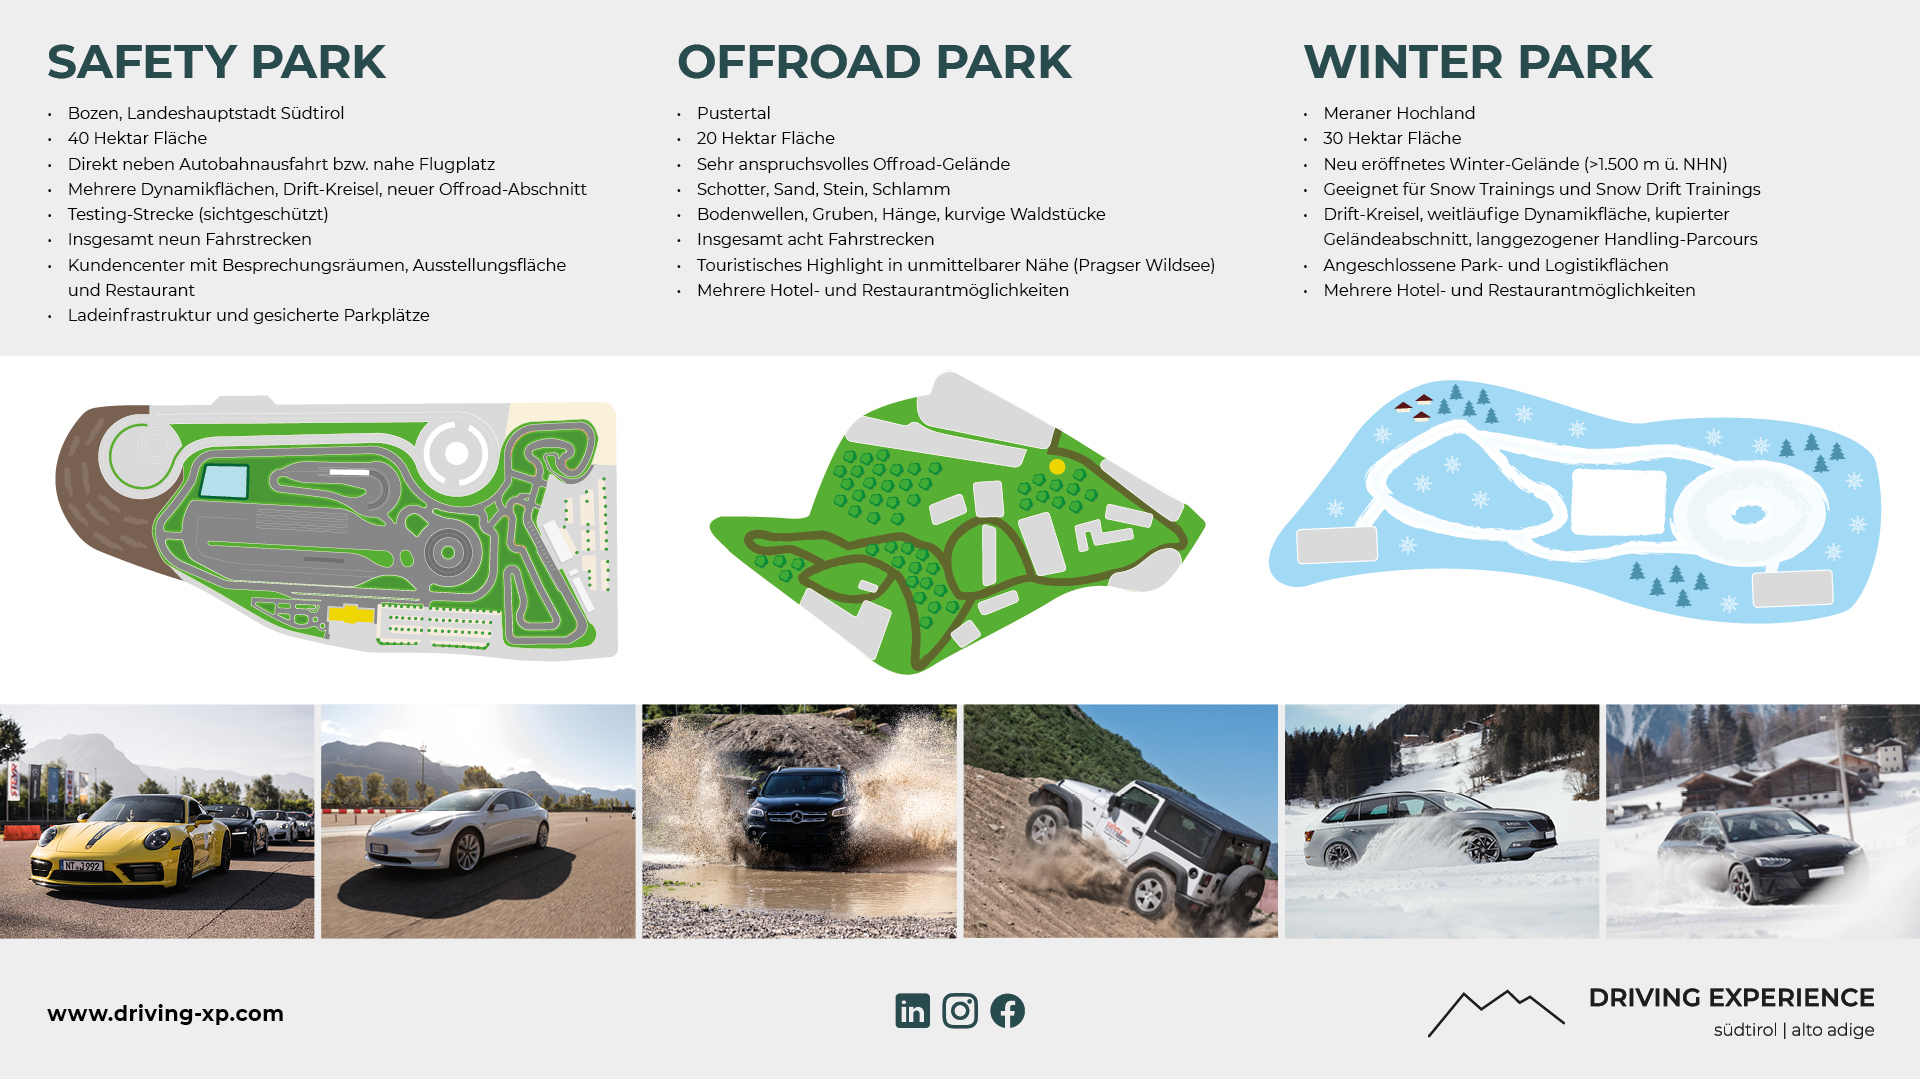 Offroadpark - Übersicht mit Karte - Offroad-Blog